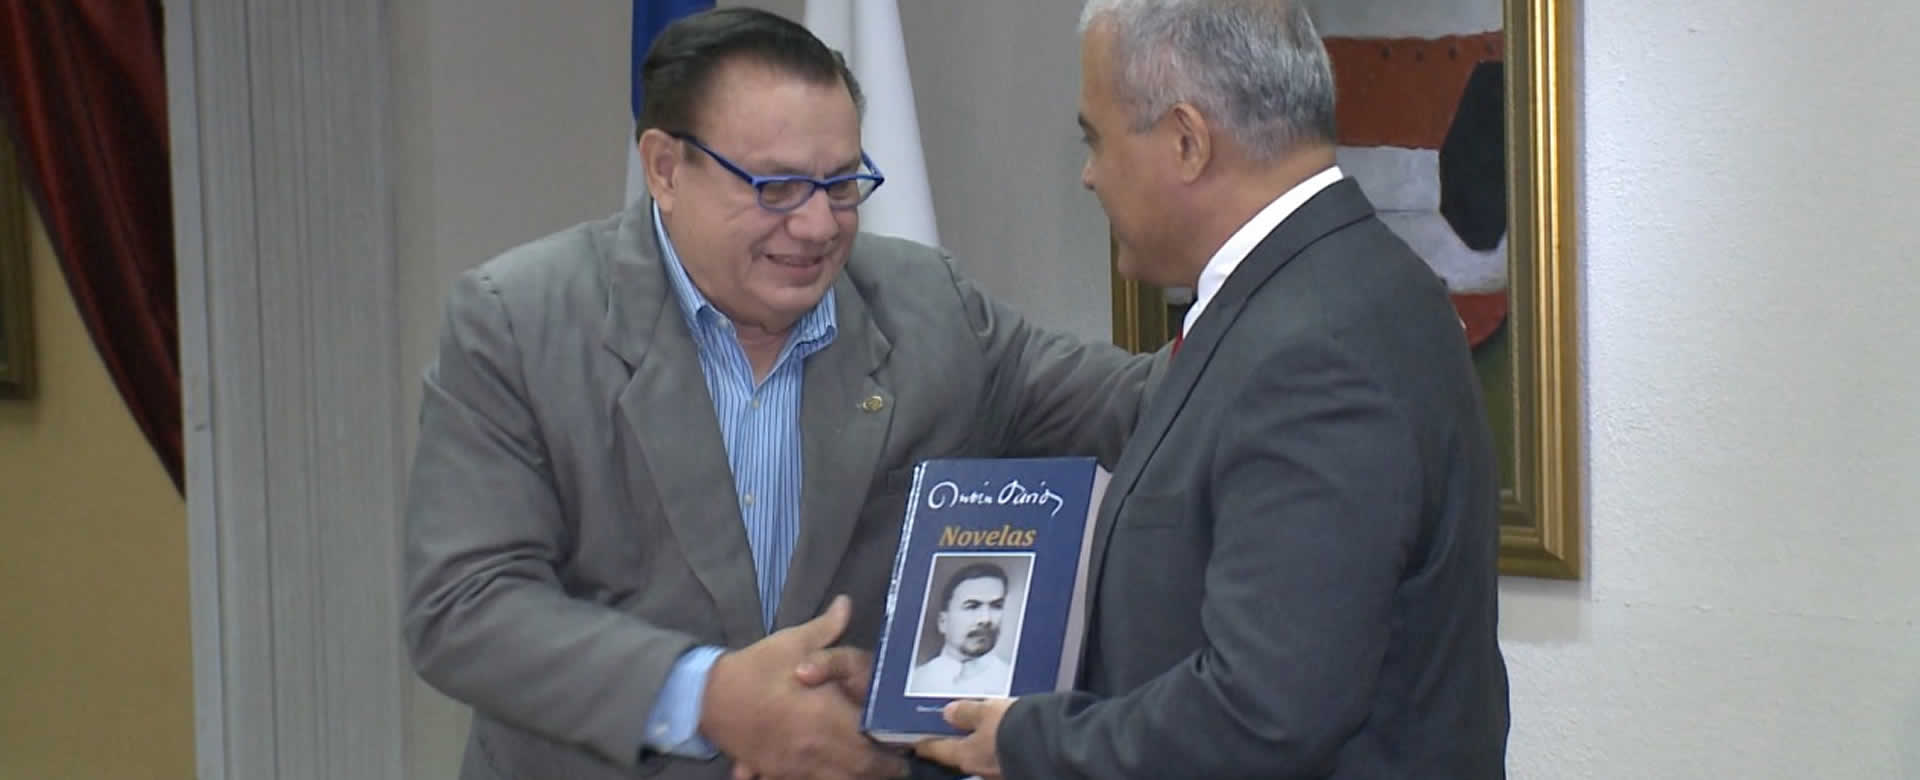 Banco Central de Nicaragua, presenta libro en homenaje a Rubén Darío